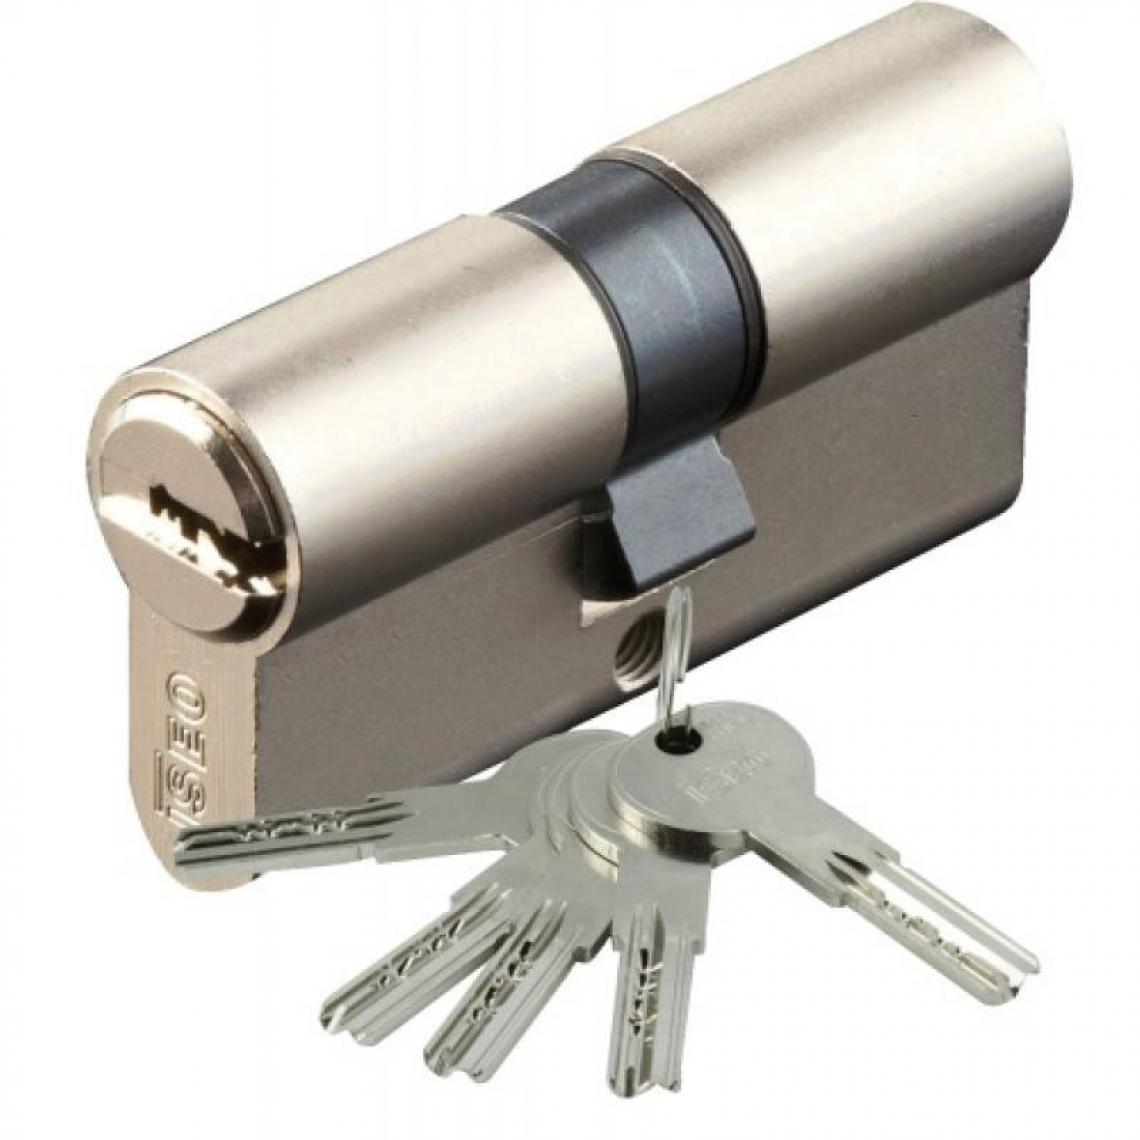 Iseo City - Cylindre type ISR6 sur numéro suivi AGL 697 laiton nickelé 3 clés 40 x 50 - Cylindre de porte